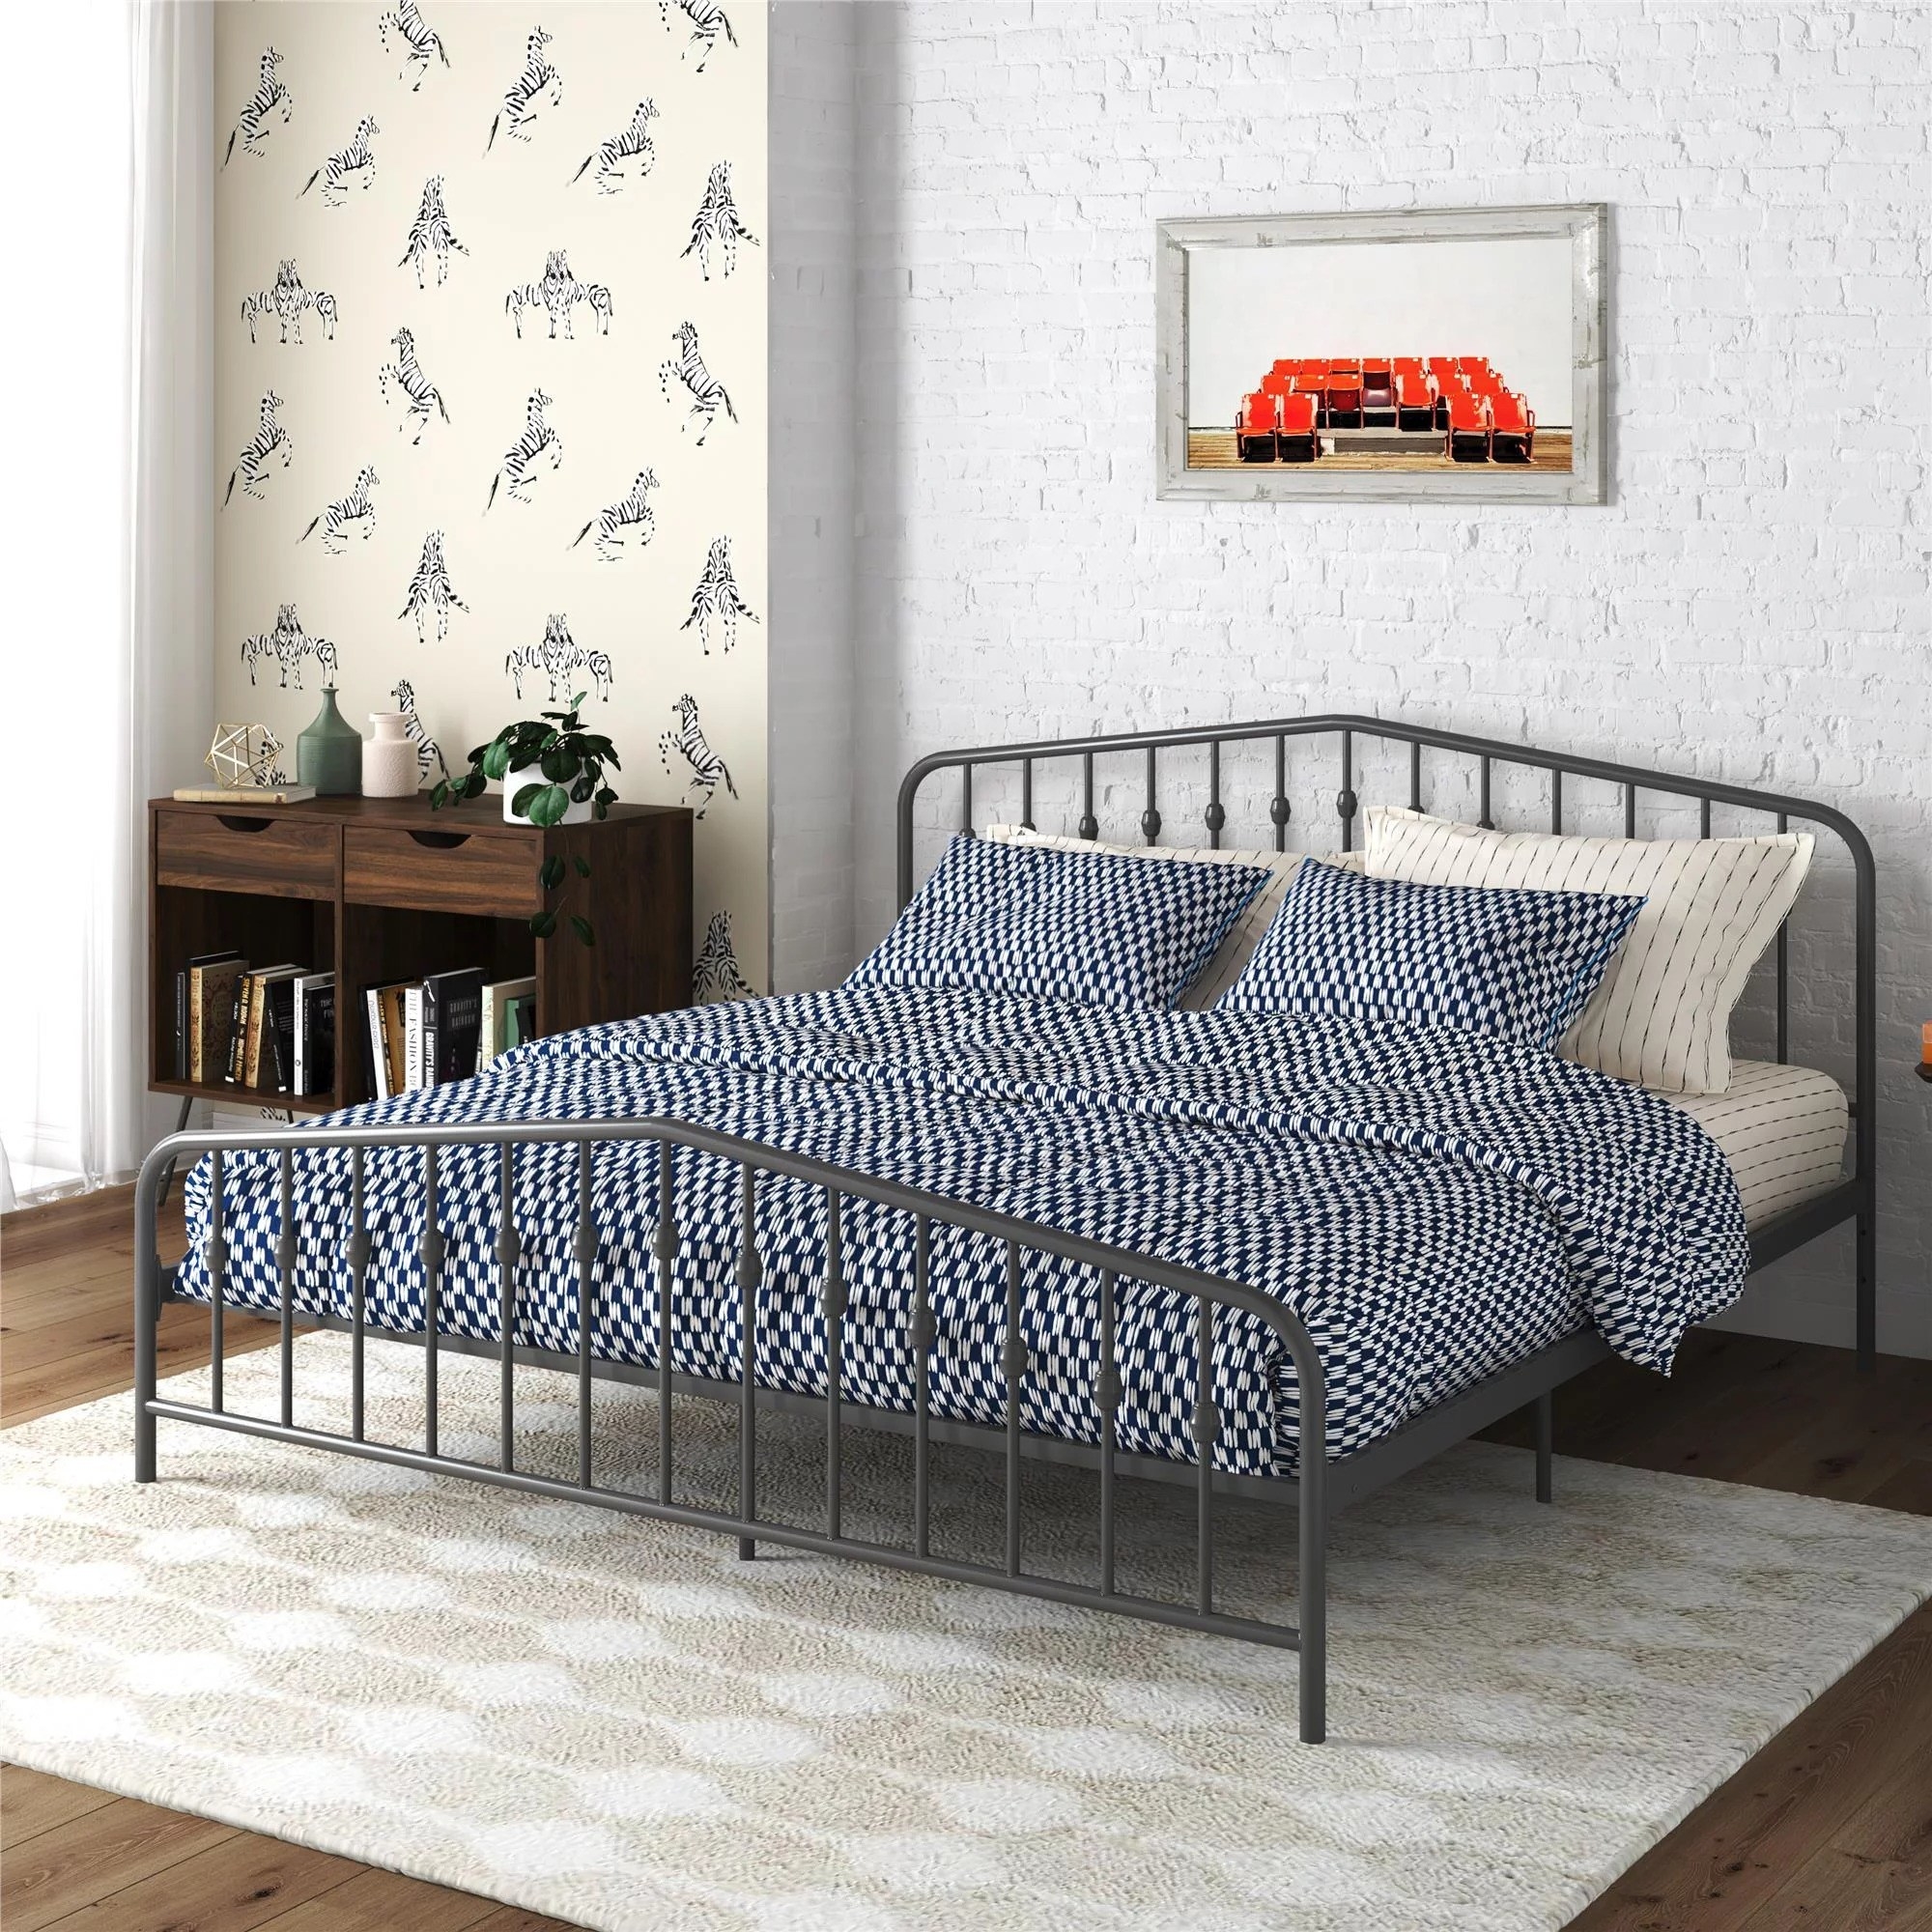 A bed frame set up in a bedroom